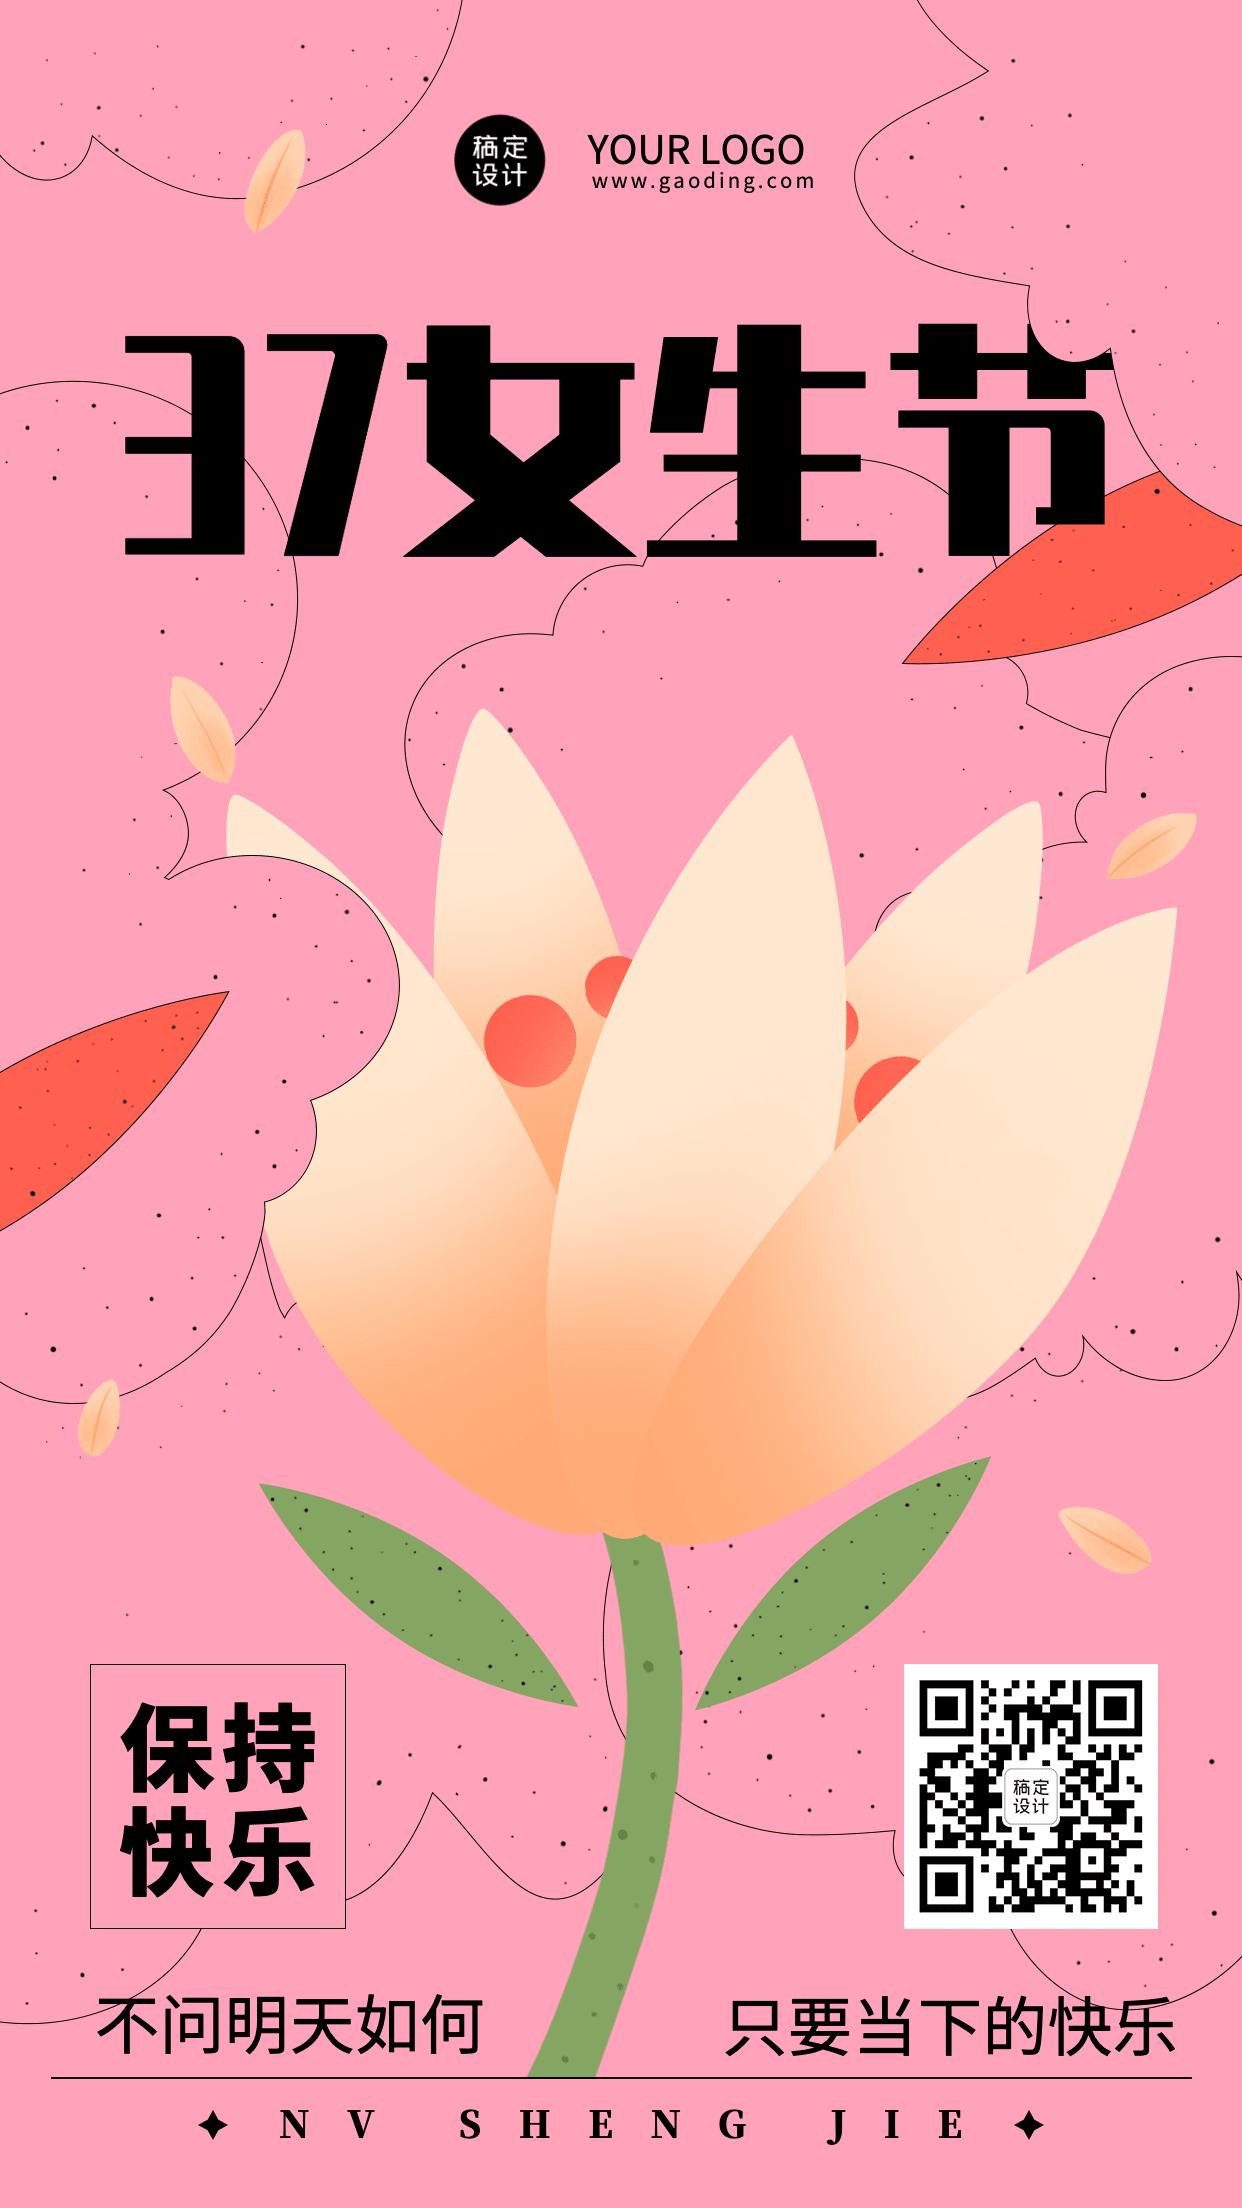 3.7女生节节日祝福插画手机海报